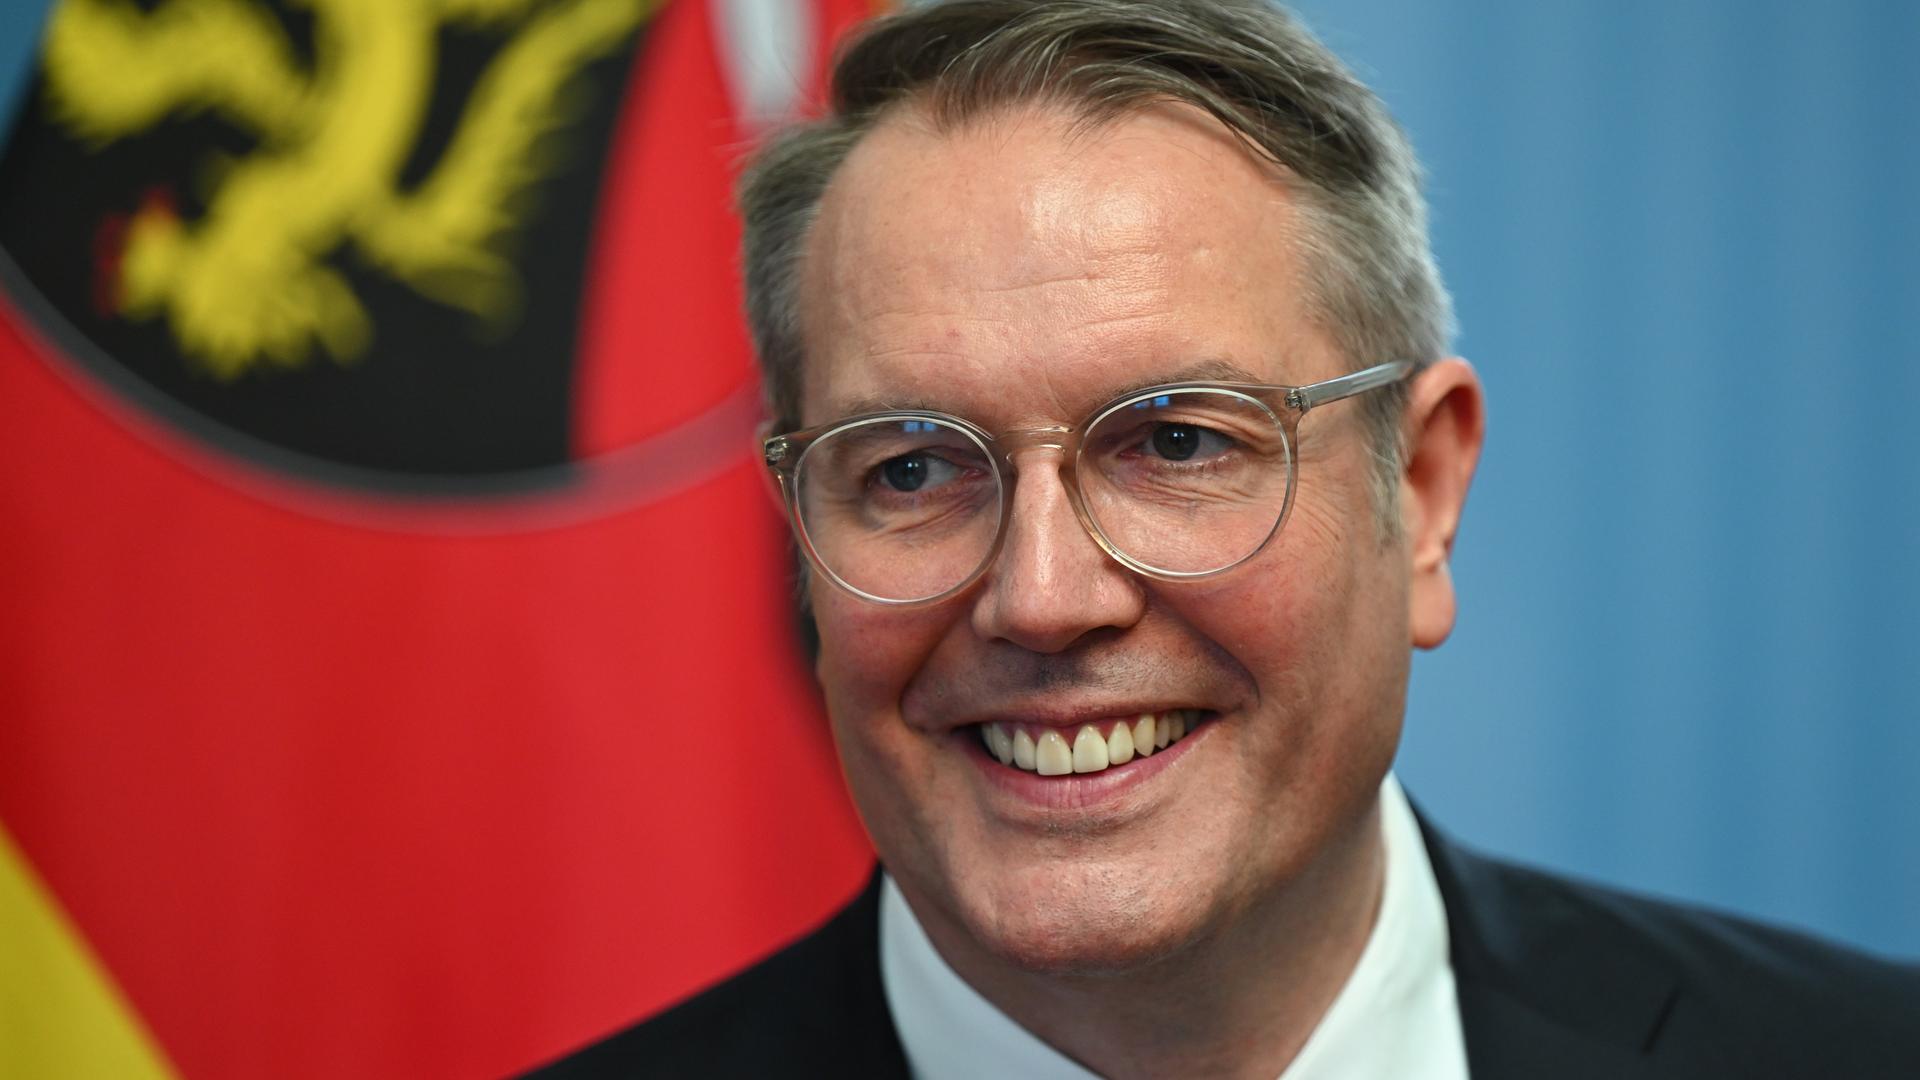 Der neue rheinland-pfälzische Ministerpräsident Alexander Schweitzer (SPD) steht vor der Flagge von Rheinland-Pfalz.